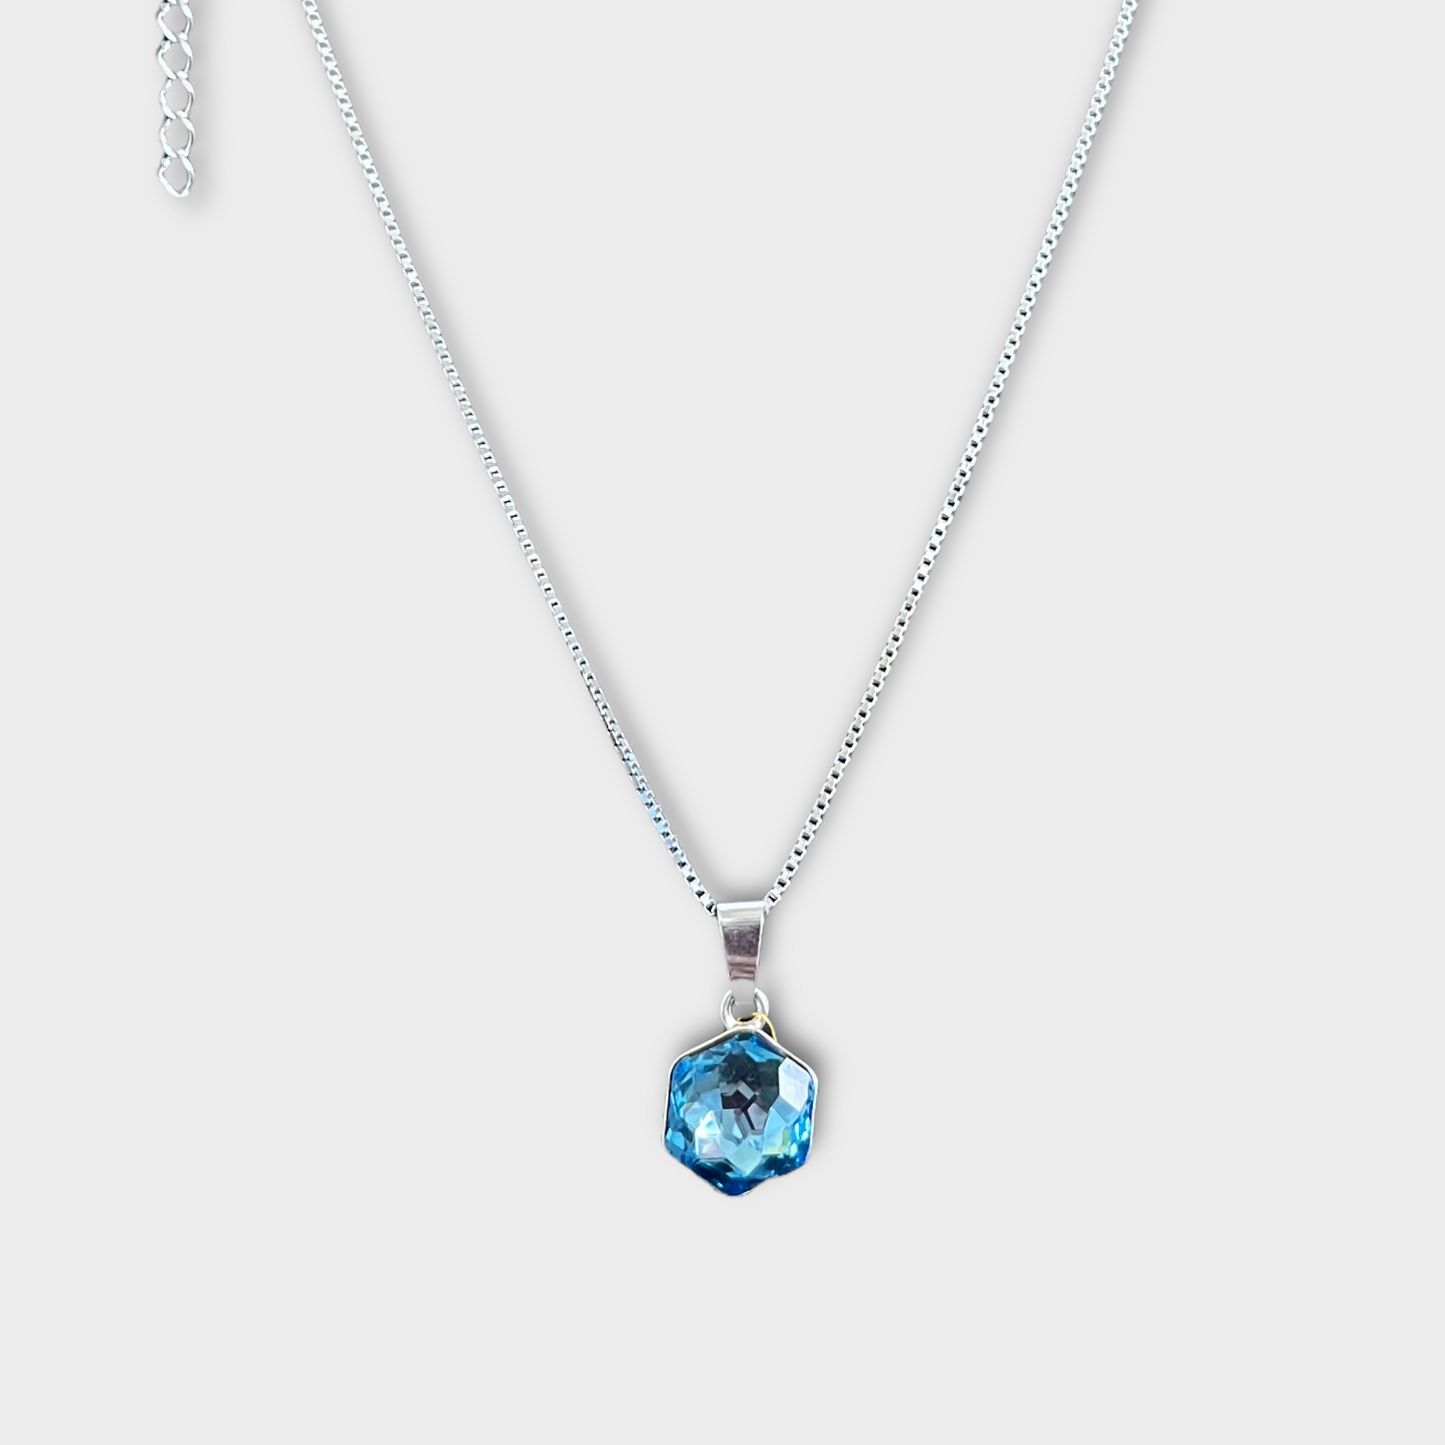 Collier avec cristaux Swarovski, bleu clair, argent rhodié, HONEY